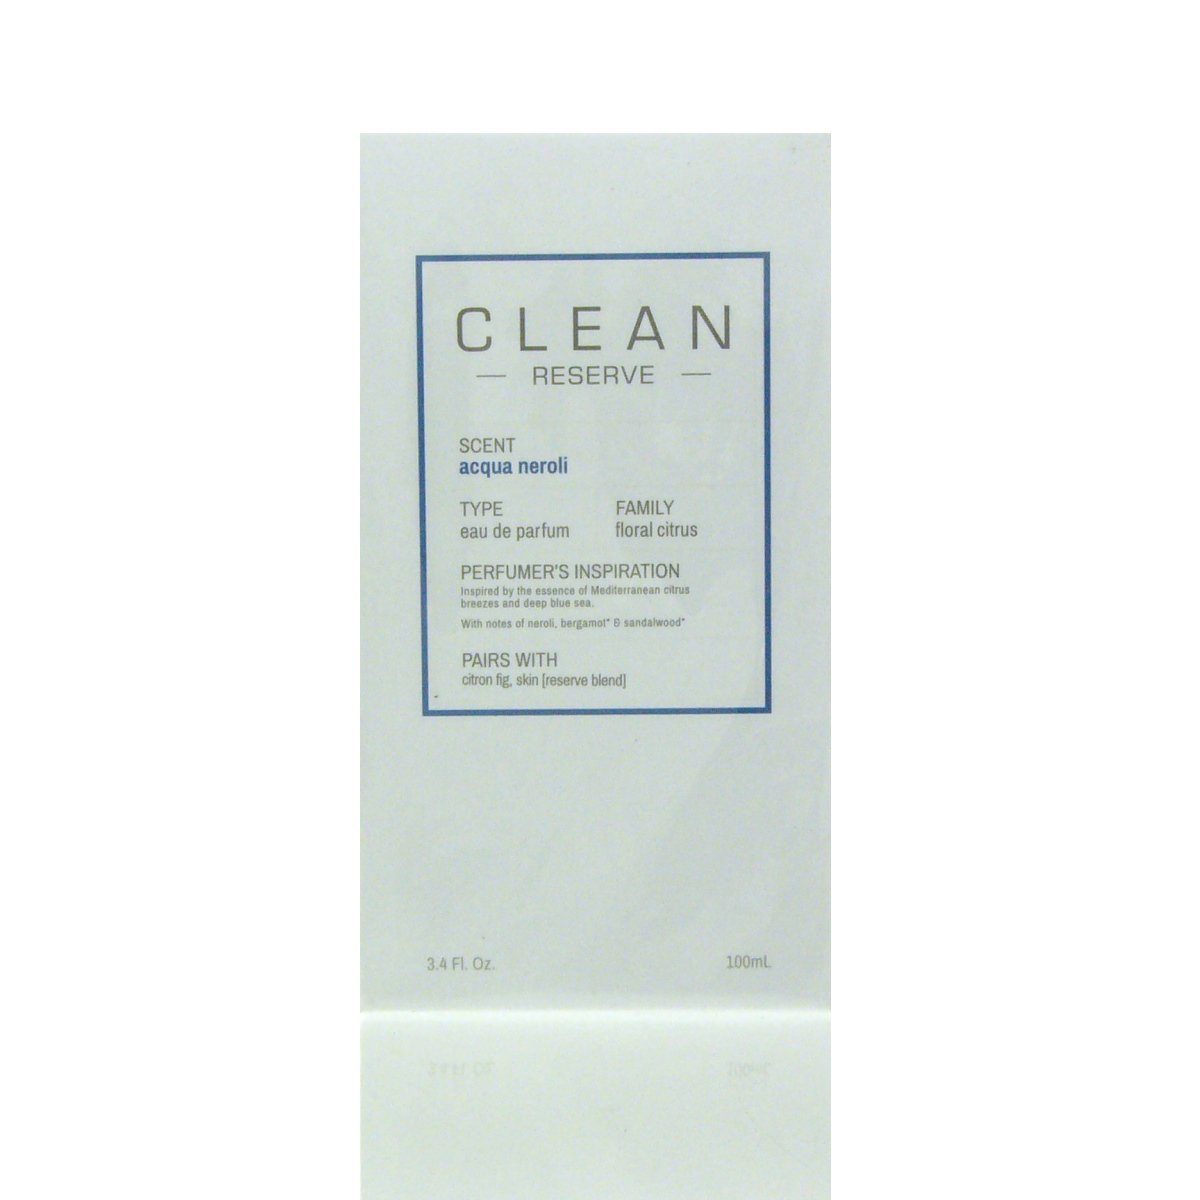 Clean Eau 100 Neroli CLEAN de Eau Acqua Reserve Parfum de ml Parfum